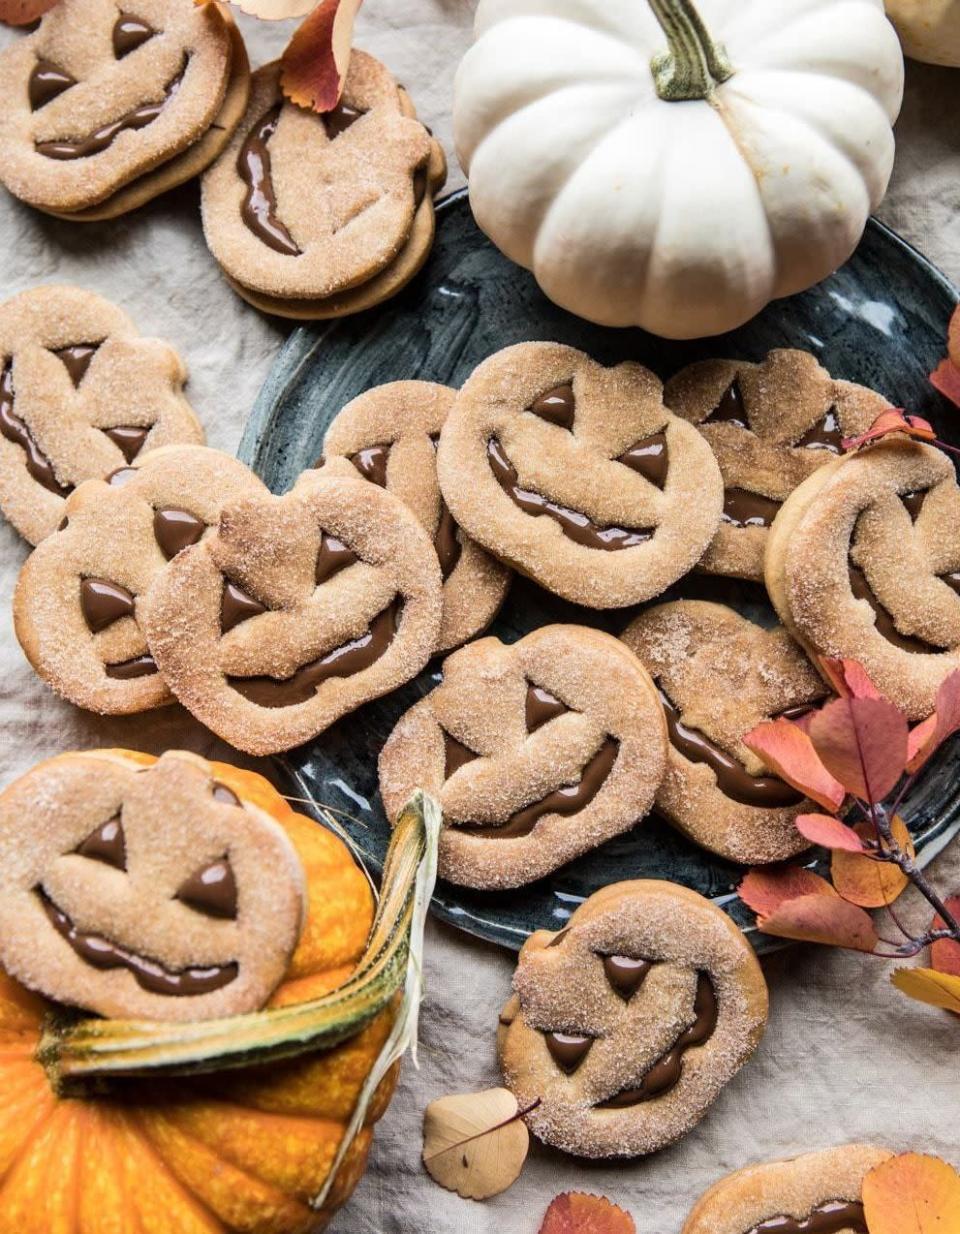 <p>Des sablés d’Halloween délicatement parfumés aux épices d’automne. Vous pouvez les fourrer au chocolat ou à la confiture, selon vos envies.</p><p>Découvrir la <a href="https://www.halfbakedharvest.com/milk-chocolate-stuffed-jack-o-lantern-cookies/" rel="nofollow noopener" target="_blank" data-ylk="slk:recette" class="link ">recette</a></p><br><br><a href="https://www.elle.fr/Elle-a-Table/Les-dossiers-de-la-redaction/Dossier-de-la-redac/Idees-de-cookies-Halloween#xtor=AL-541" rel="nofollow noopener" target="_blank" data-ylk="slk:Voir la suite des photos sur ELLE.fr" class="link ">Voir la suite des photos sur ELLE.fr</a><br><h3> A lire aussi </h3><ul><li><a href="https://www.elle.fr/Elle-a-Table/Les-dossiers-de-la-redaction/Dossier-de-la-redac/Cocktails-Halloween#xtor=AL-541" rel="nofollow noopener" target="_blank" data-ylk="slk:15 idées de cocktails d’Halloween ensorcelants" class="link ">15 idées de cocktails d’Halloween ensorcelants</a></li><li><a href="https://www.elle.fr/Elle-a-Table/Les-dossiers-de-la-redaction/News-de-la-redaction/Meringues-fantomes-Halloween-3967704#xtor=AL-541" rel="nofollow noopener" target="_blank" data-ylk="slk:En cuisine avec : mes meringues fantômes d’Halloween" class="link ">En cuisine avec : mes meringues fantômes d’Halloween</a></li><li><a href="https://www.elle.fr/Elle-a-Table/Les-dossiers-de-la-redaction/Dossier-de-la-redac/Gateau-halloween#xtor=AL-541" rel="nofollow noopener" target="_blank" data-ylk="slk:24 gâteaux d’Halloween horriblement bons" class="link ">24 gâteaux d’Halloween horriblement bons</a></li><li><a href="https://www.elle.fr/Elle-a-Table/Les-dossiers-de-la-redaction/Dossier-de-la-redac/Cupcake-Halloween#xtor=AL-541" rel="nofollow noopener" target="_blank" data-ylk="slk:Ces cupcakes d’Halloween vont faire un carton monstre" class="link ">Ces cupcakes d’Halloween vont faire un carton monstre</a></li><li><a href="https://www.elle.fr/Astro/Horoscope/Quotidien#xtor=AL-541" rel="nofollow noopener" target="_blank" data-ylk="slk:Consultez votre horoscope sur ELLE" class="link ">Consultez votre horoscope sur ELLE</a></li></ul>